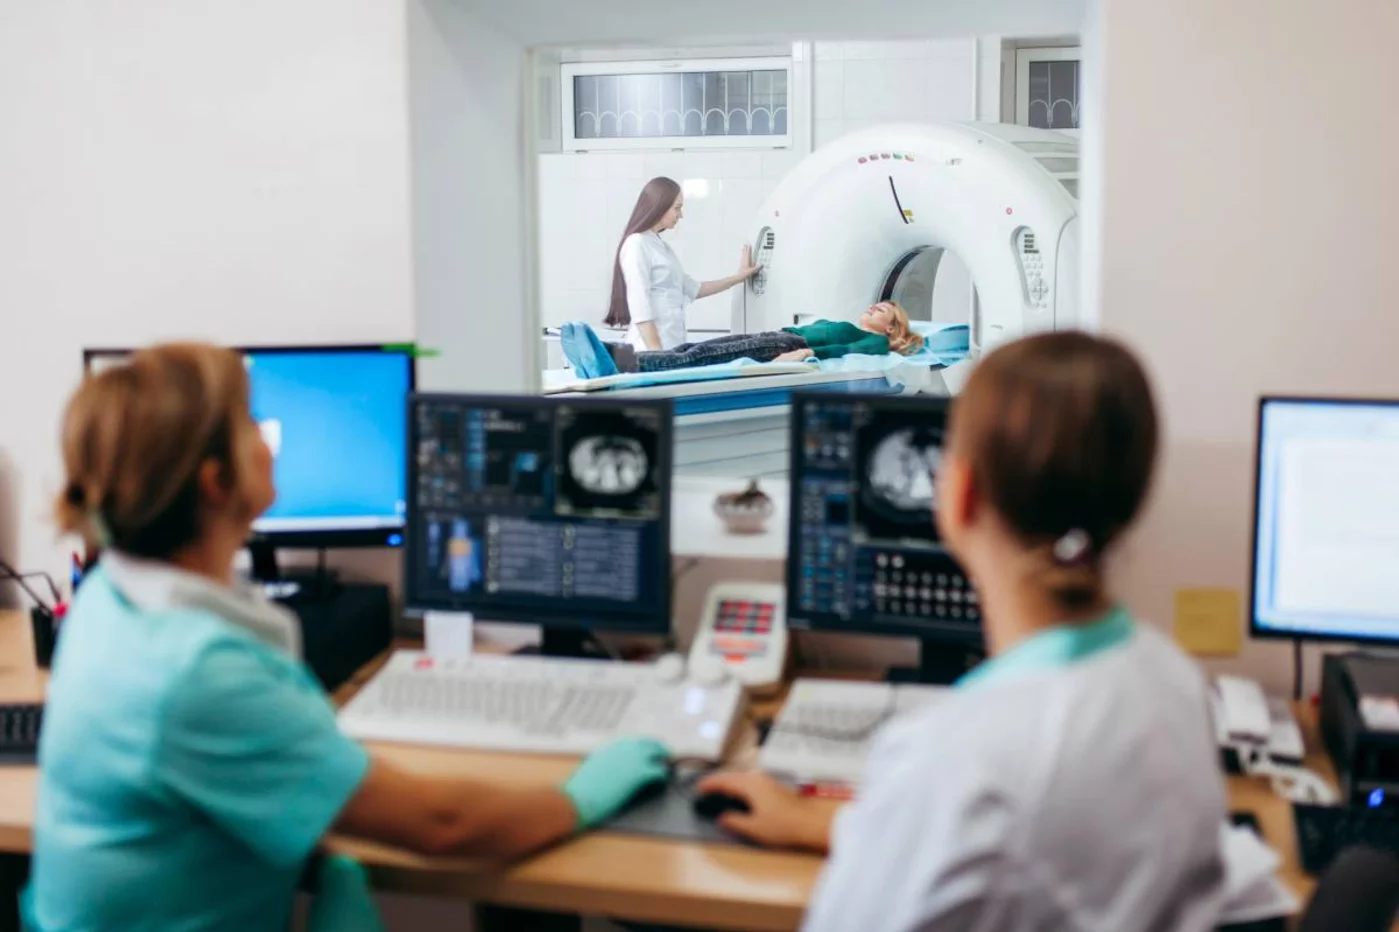 La escasez de oncólogos radioterápicos puede comprometer el cuidado adecuado de los pacientes con cáncer, según la SEOR. Foto: SHUTTERSTOCK.